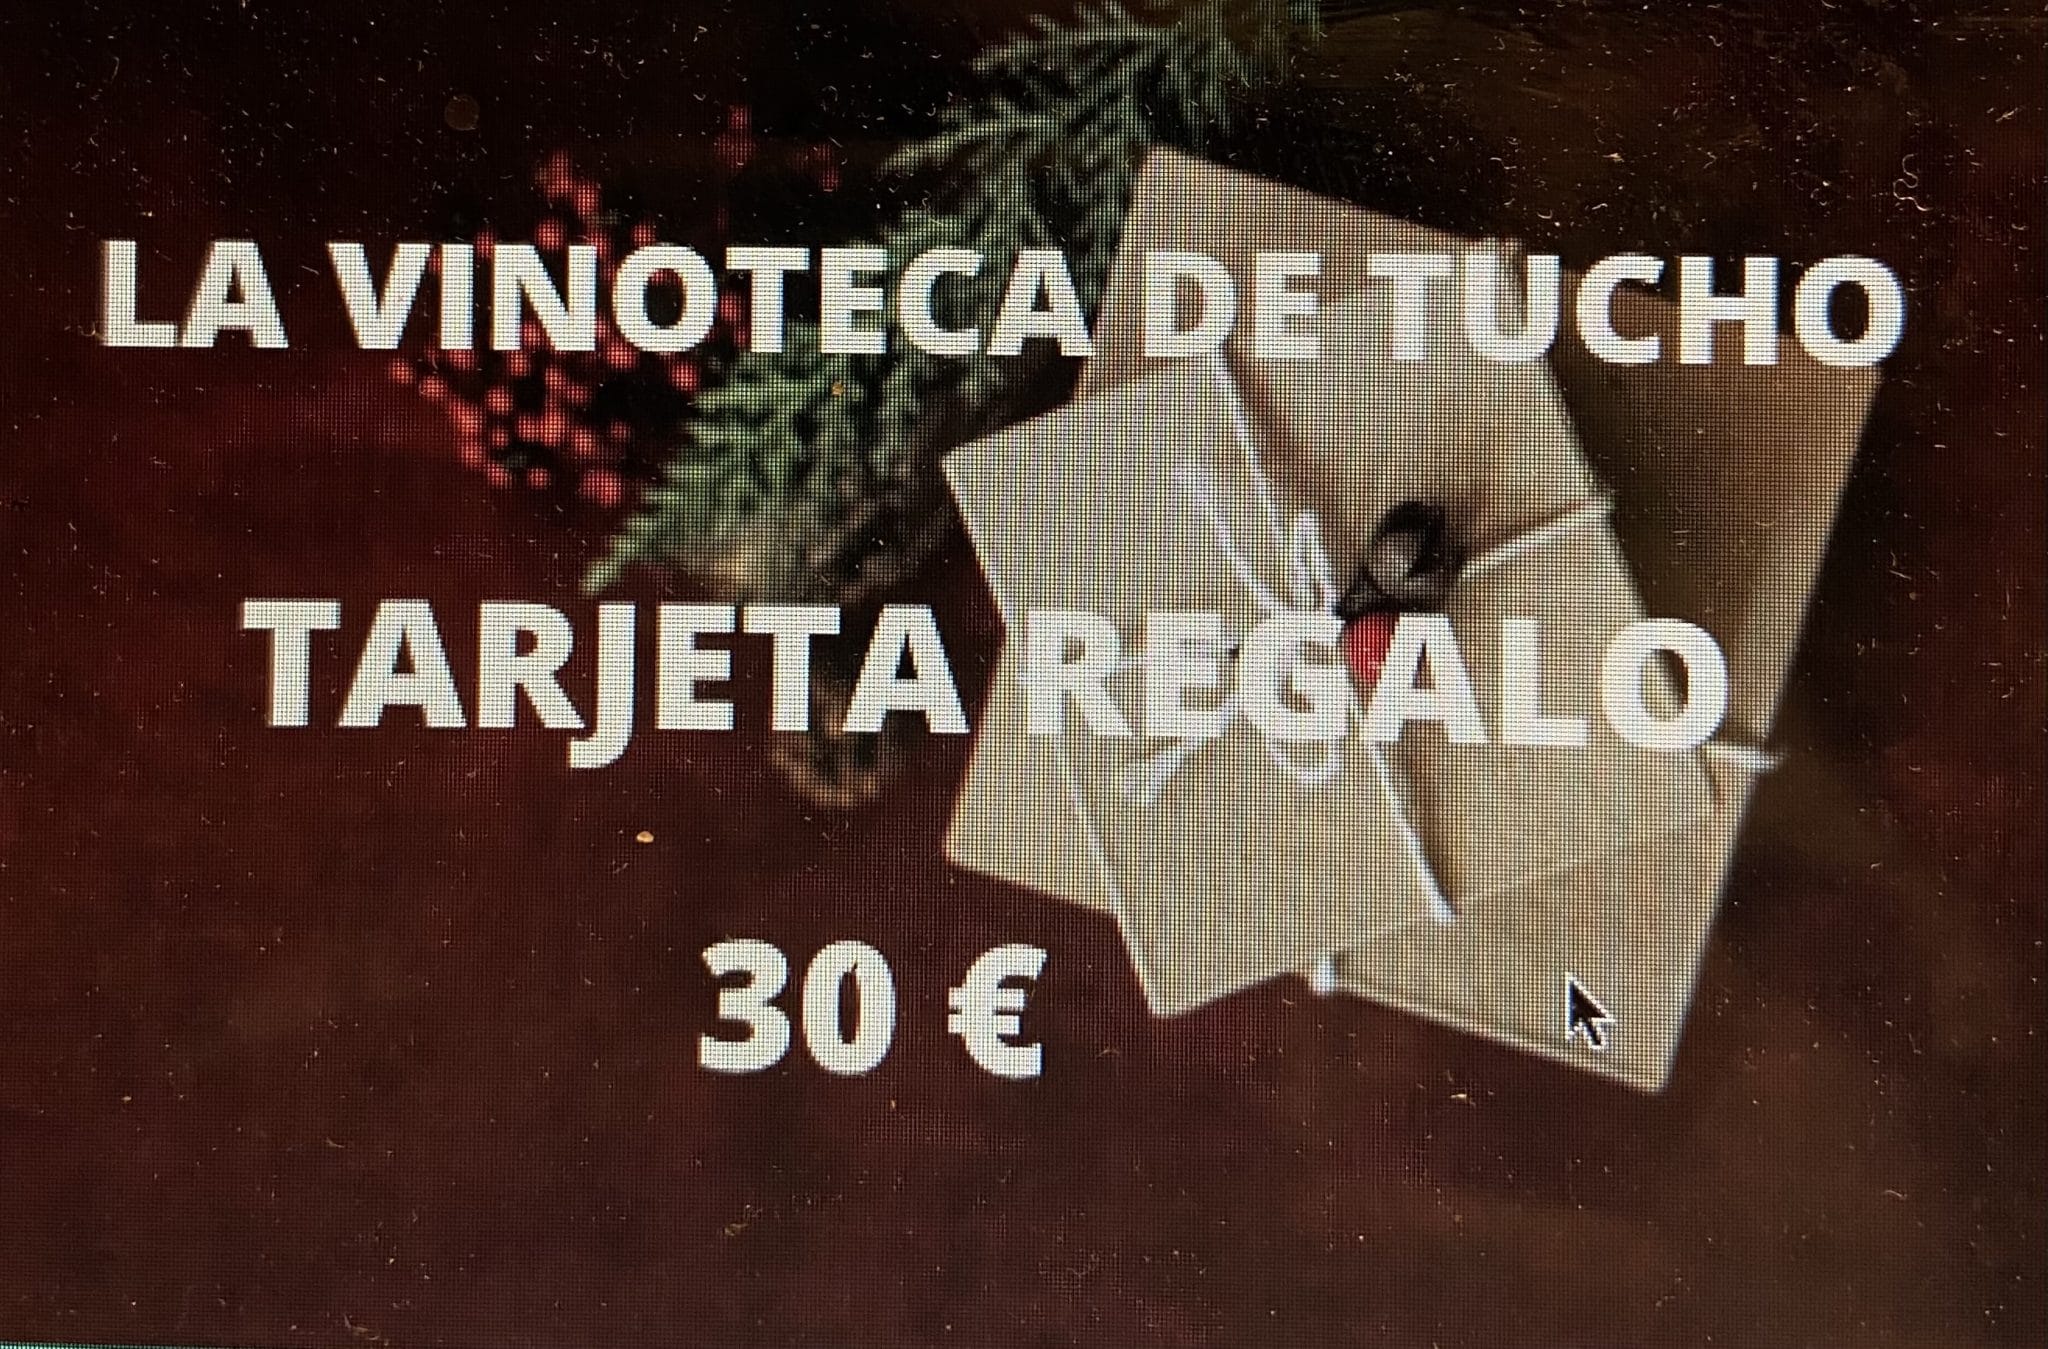 TARJETA REGALO 30 €